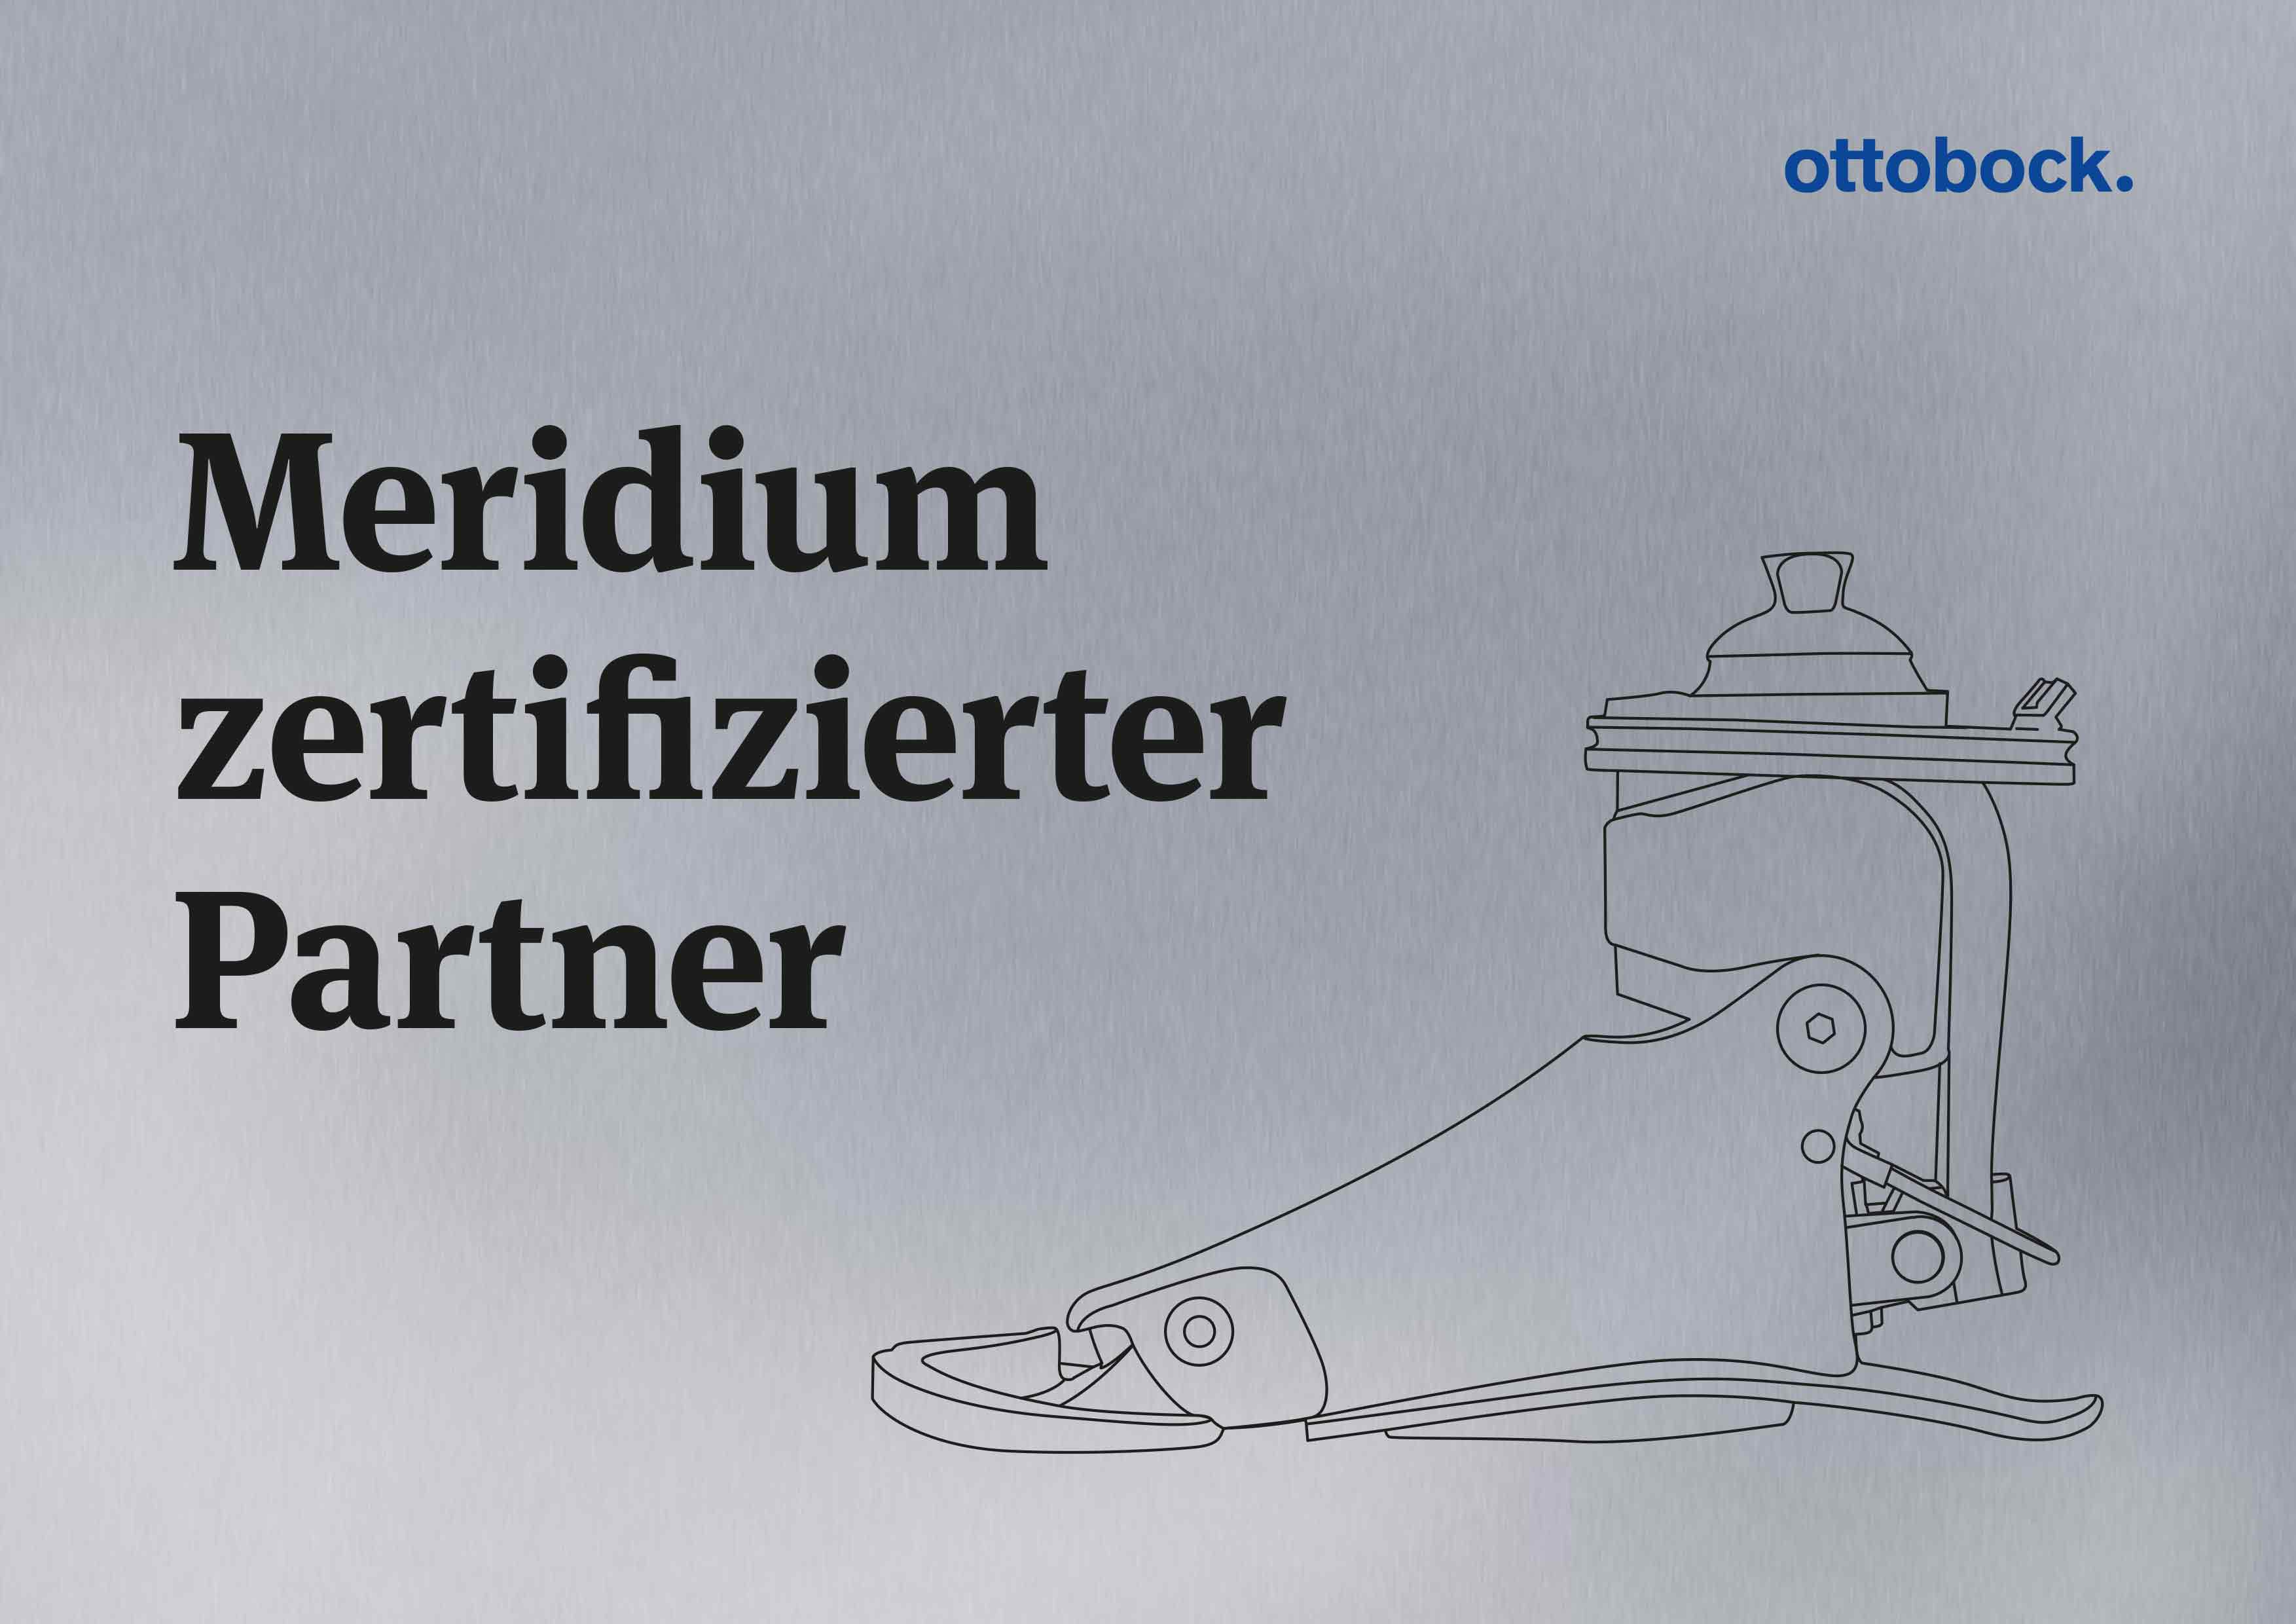 Meridium zertifizierter Partner - Zertifizierungsplakette by Ottobock